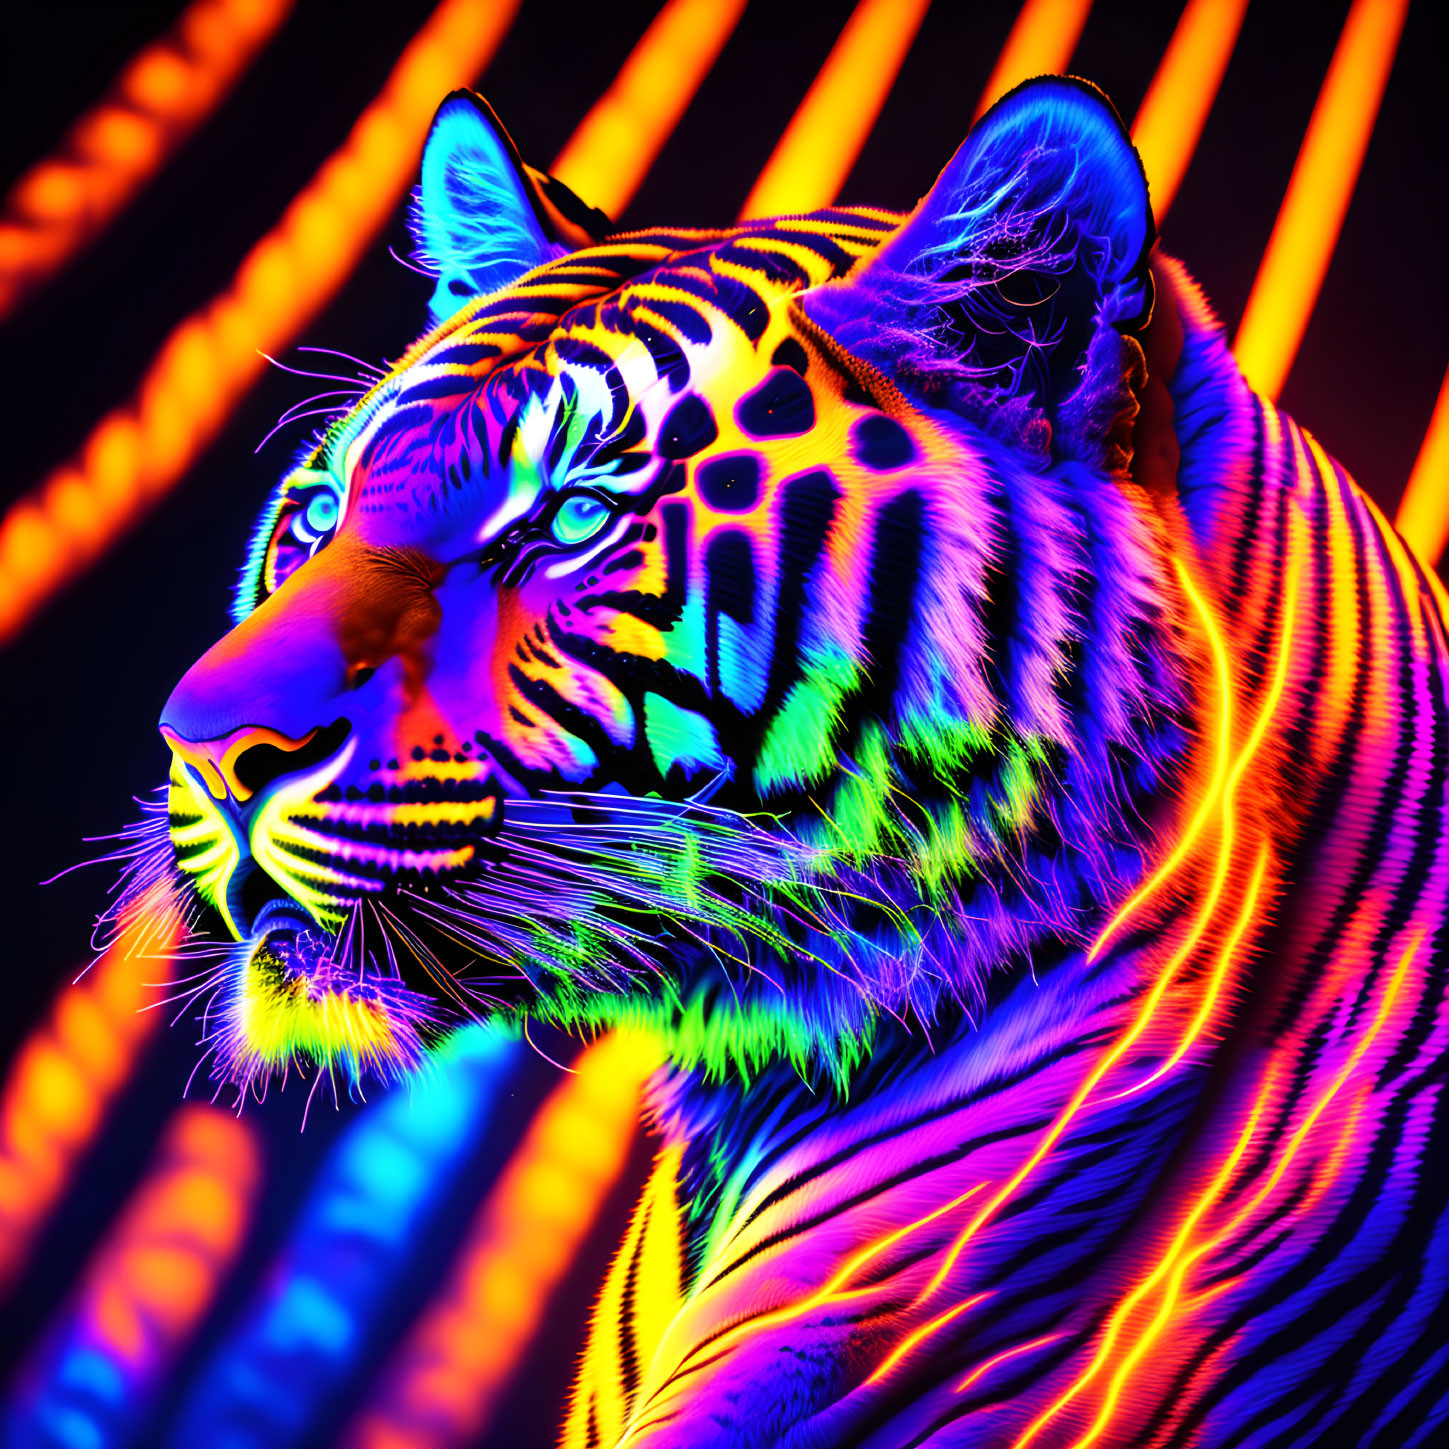 Black light art of a tiger